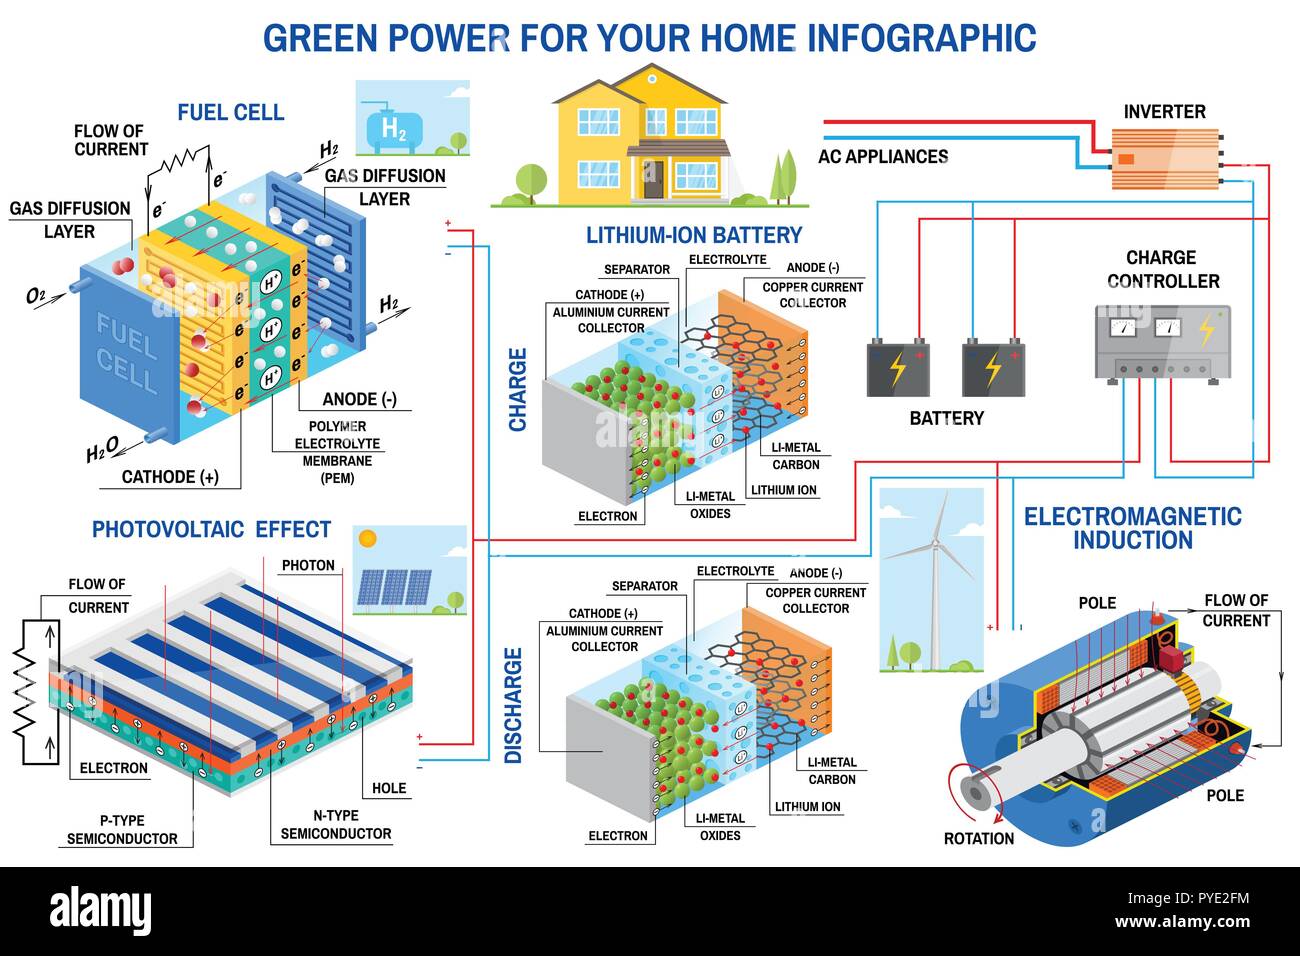 Solarzelle, Brennstoffzellen und Windenergie generation System für zu Hause Infografik. Windturbine, Solar Panel, Batterie, Laderegler und Wechselrichter. Vektor. Lithium ist der Treibstoff der Grün Stock Vektor